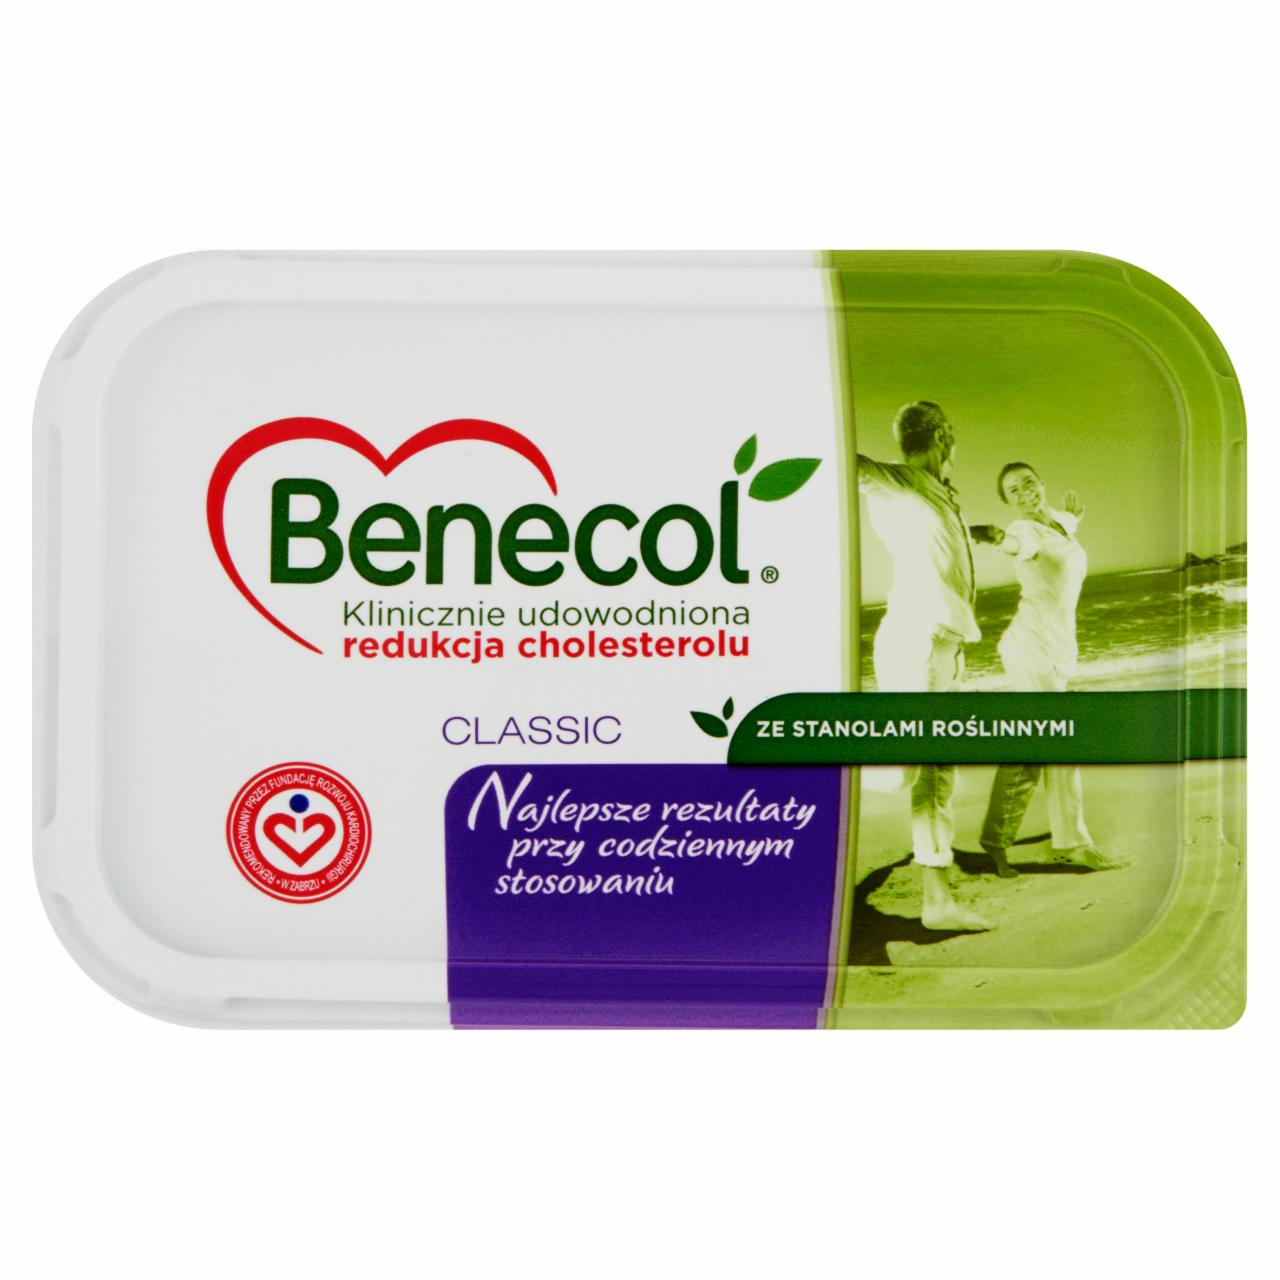 Zdjęcia - Benecol Classic ze stanolami roślinnymi Margaryna 400 g